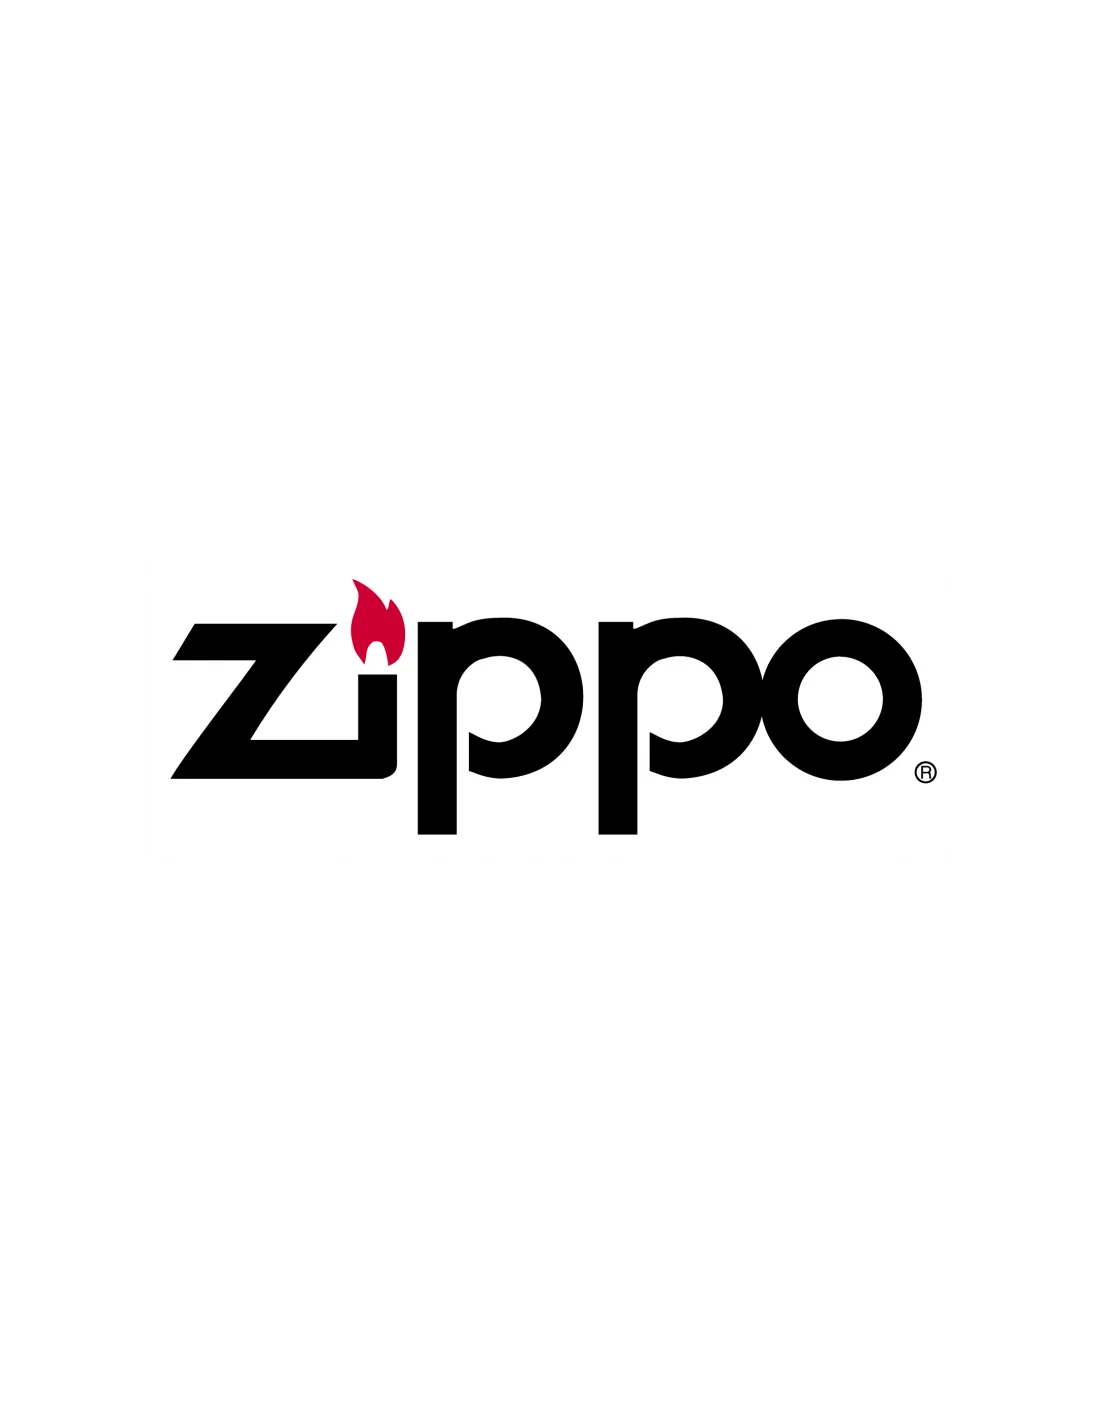 Contento Boîte cadeau Zippo incluant 125ml d'essence à